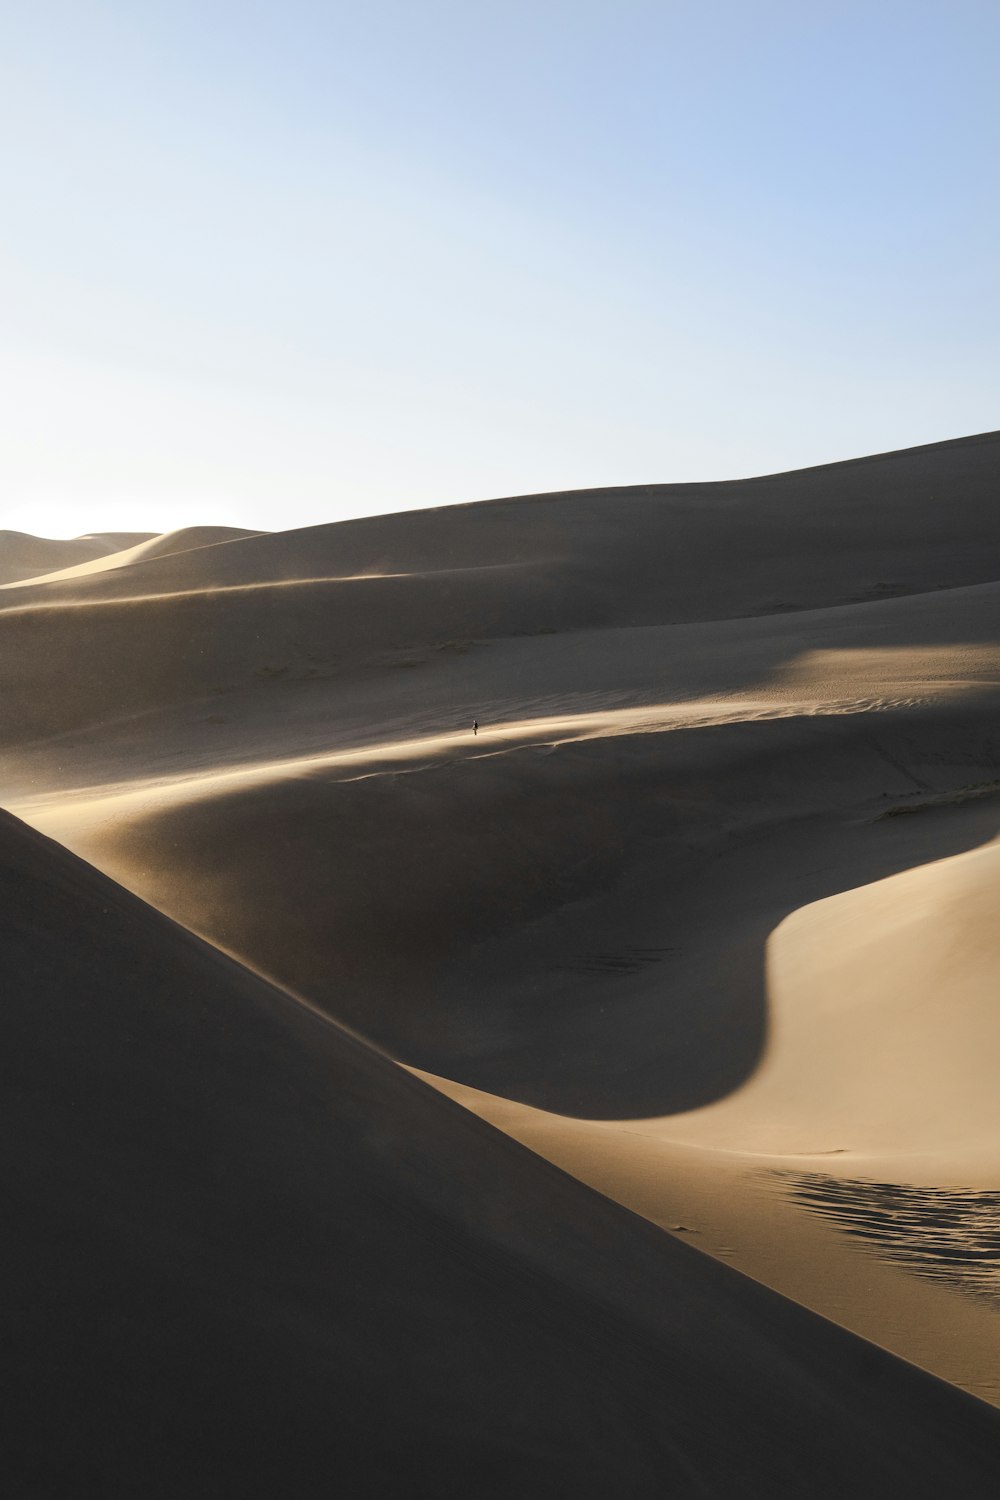 Fotografia di landscsape del campo desertico